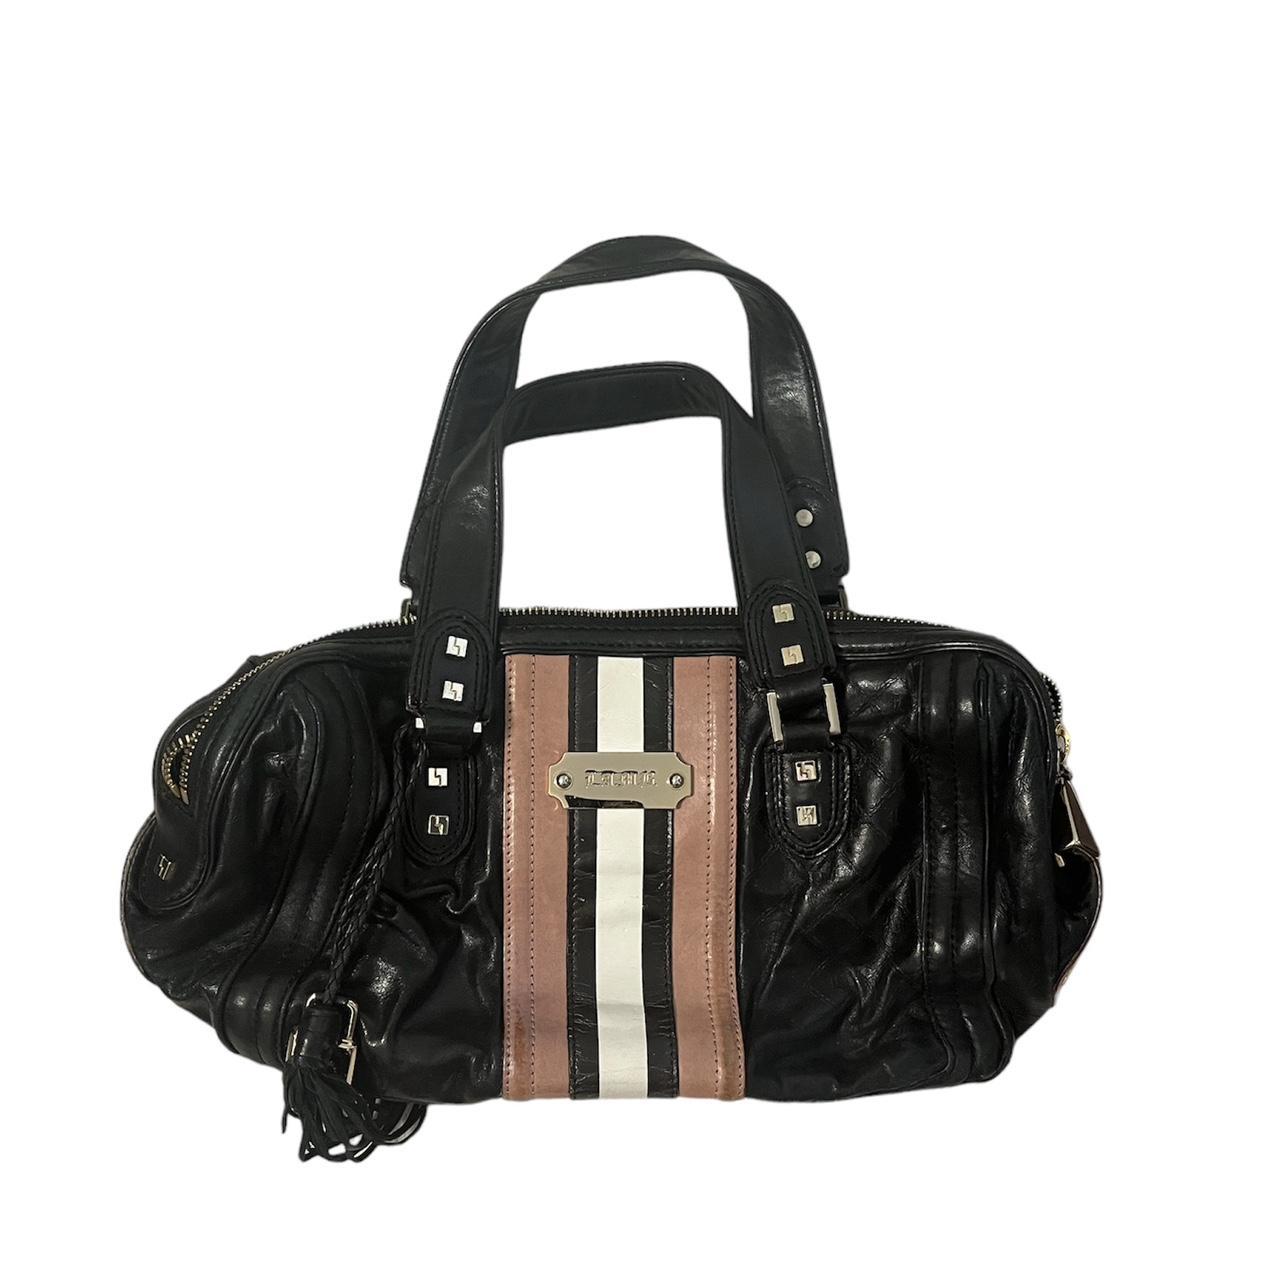 Gwen Stefani Black Shoulder Bags for Women | Mercari